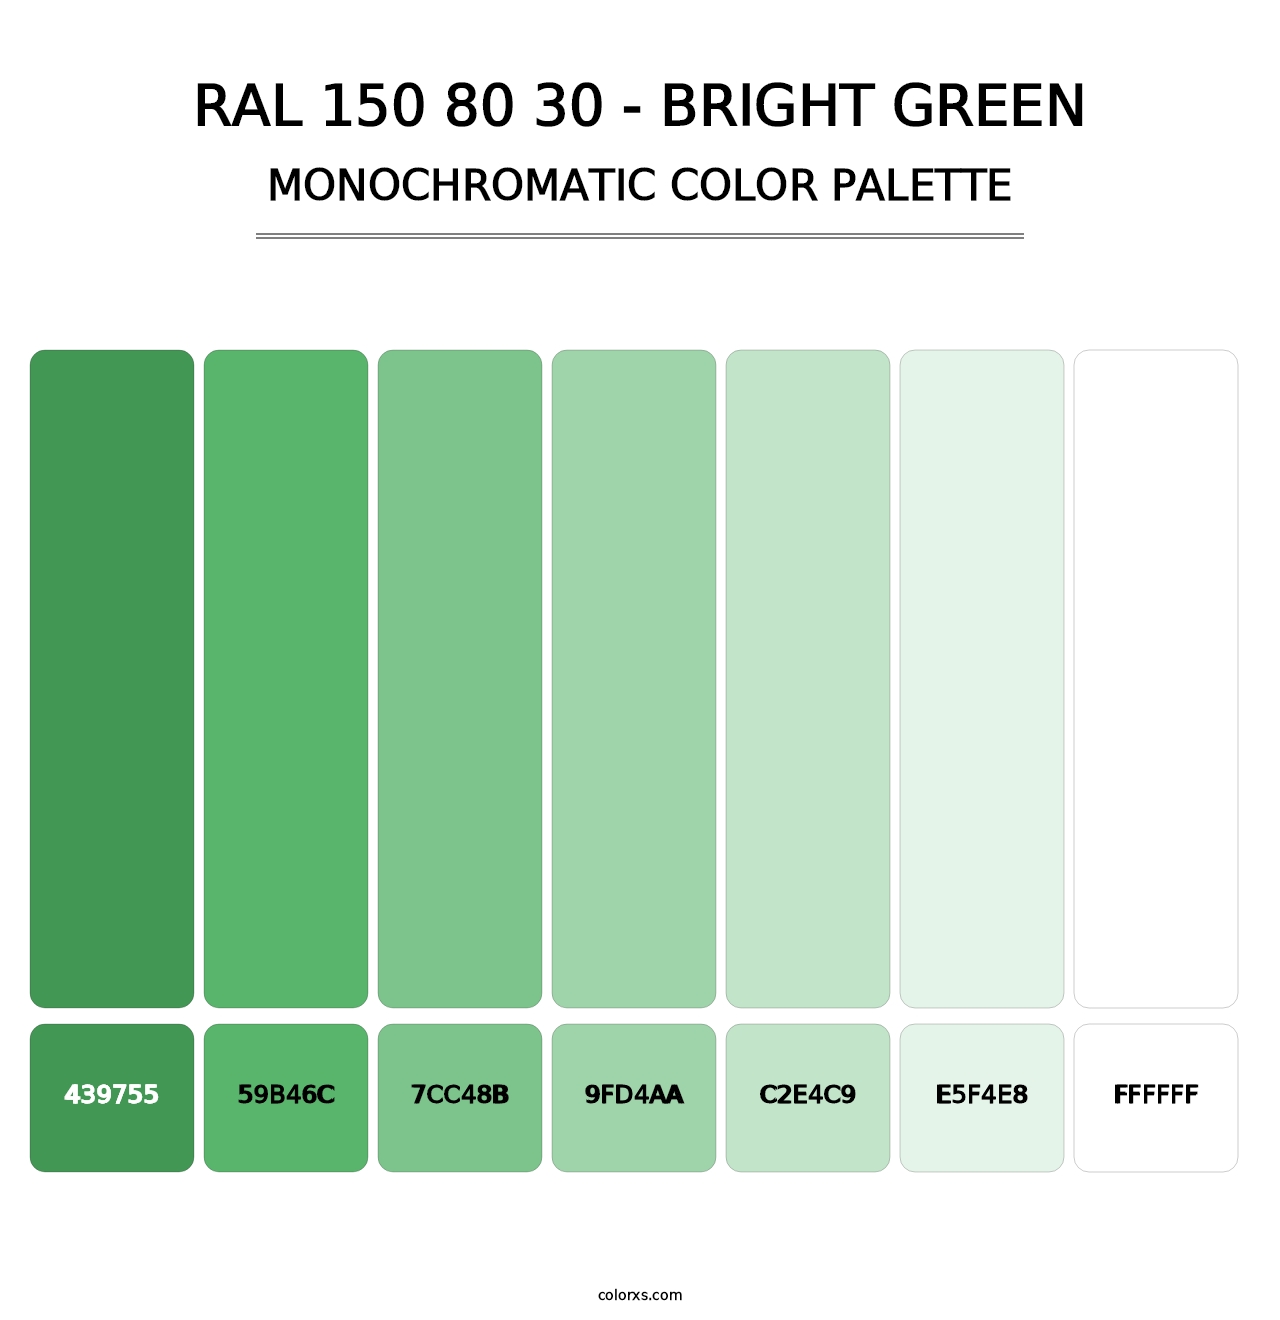 RAL 150 80 30 - Bright Green - Monochromatic Color Palette